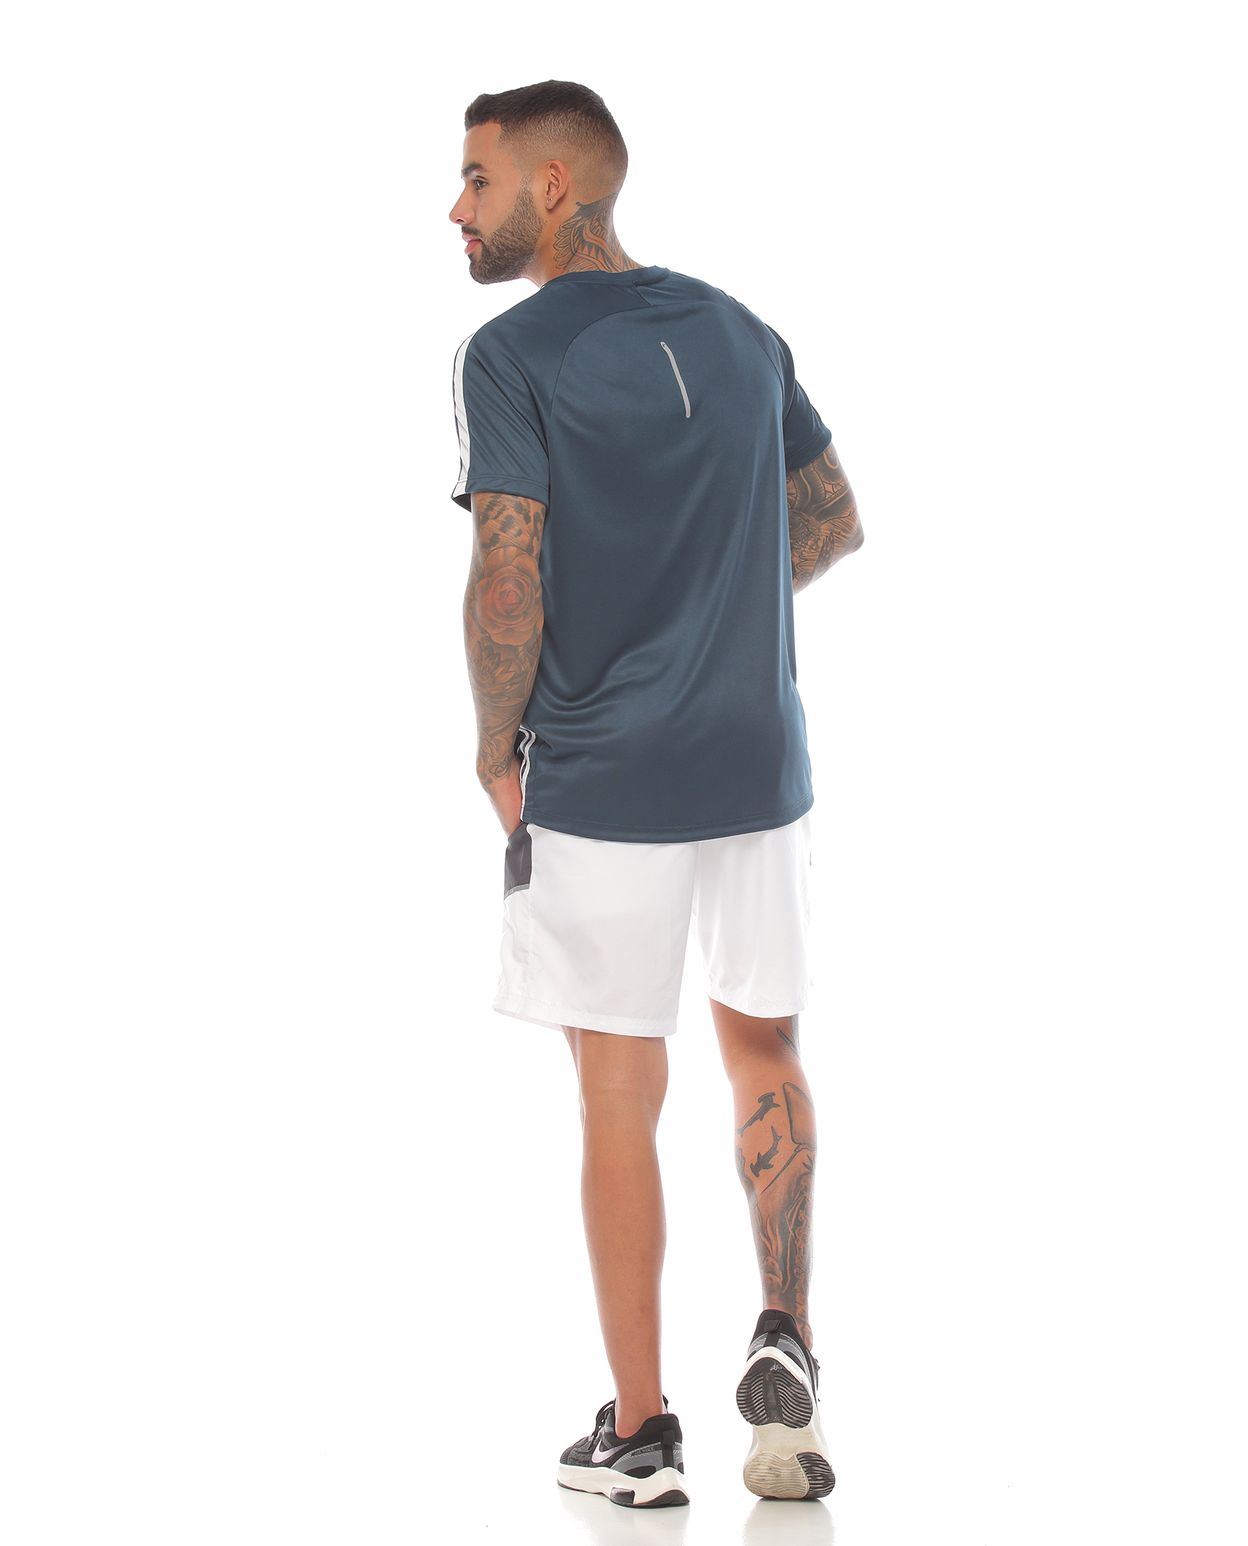 modelo con camiseta deportiva color petroleo y pantaloneta deportiva blanca para hombre cuerpo completo parte trasera